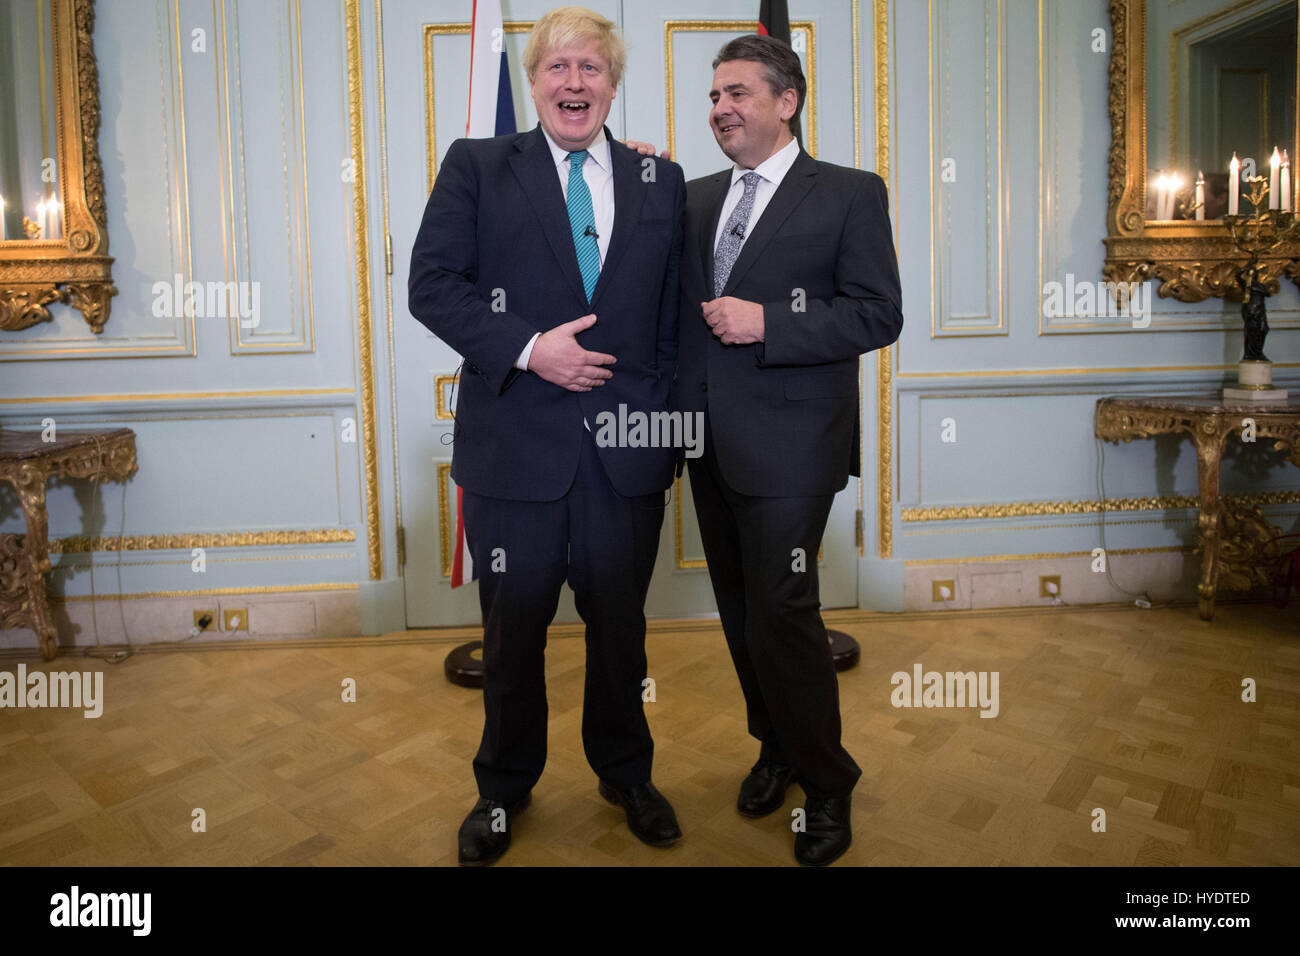 Secretaria de Relaciones Exteriores Boris Johnson se reúne con su homólogo alemán Sigmar Gabriel, Ministro de Relaciones Exteriores en su residencia londinense donde discutieron sobre Siria y Brexit. Foto de stock